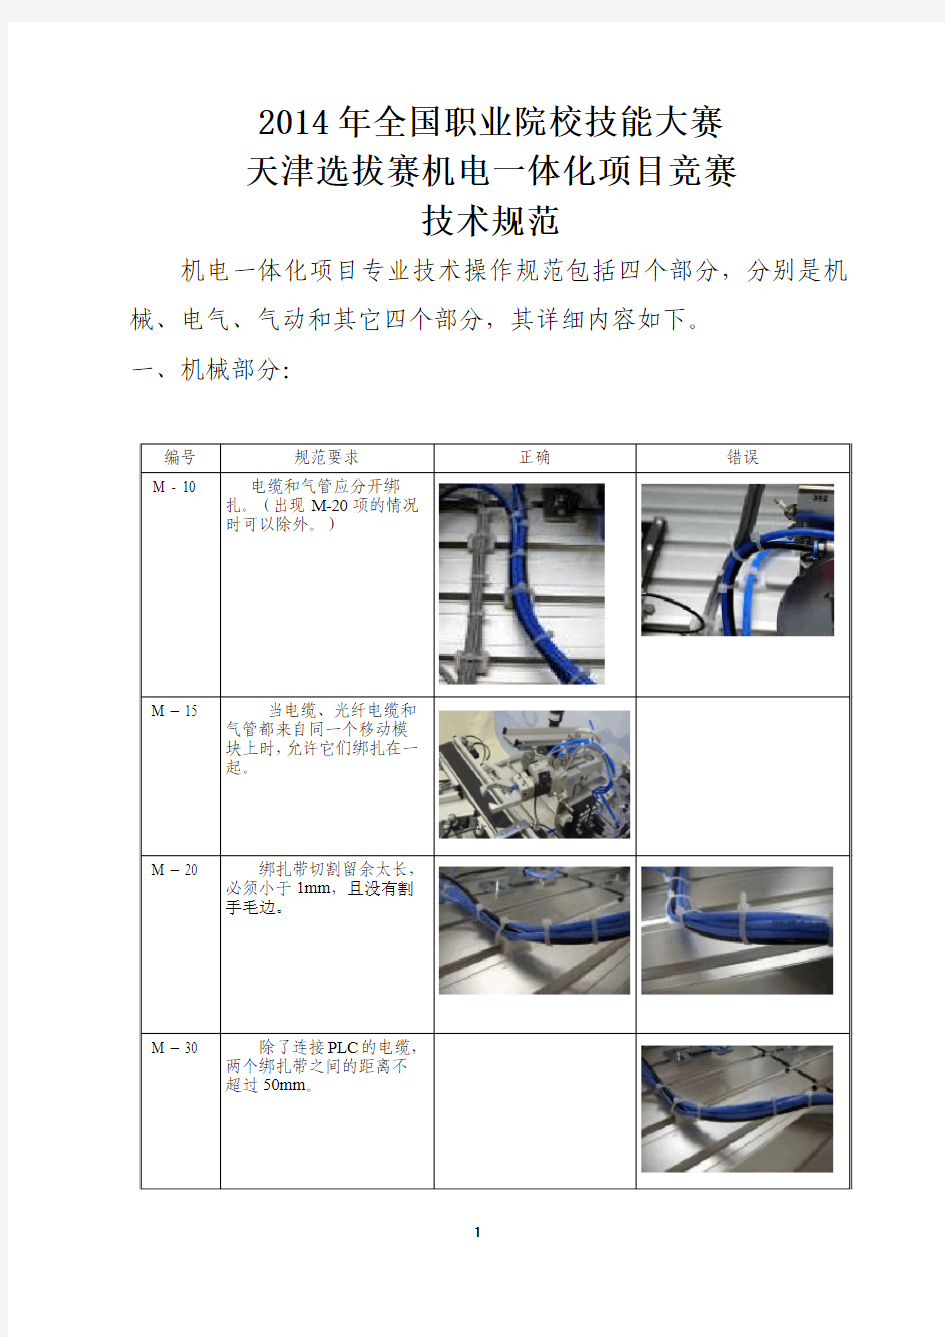 机电一体化项目竞赛技术规范_20141116天津